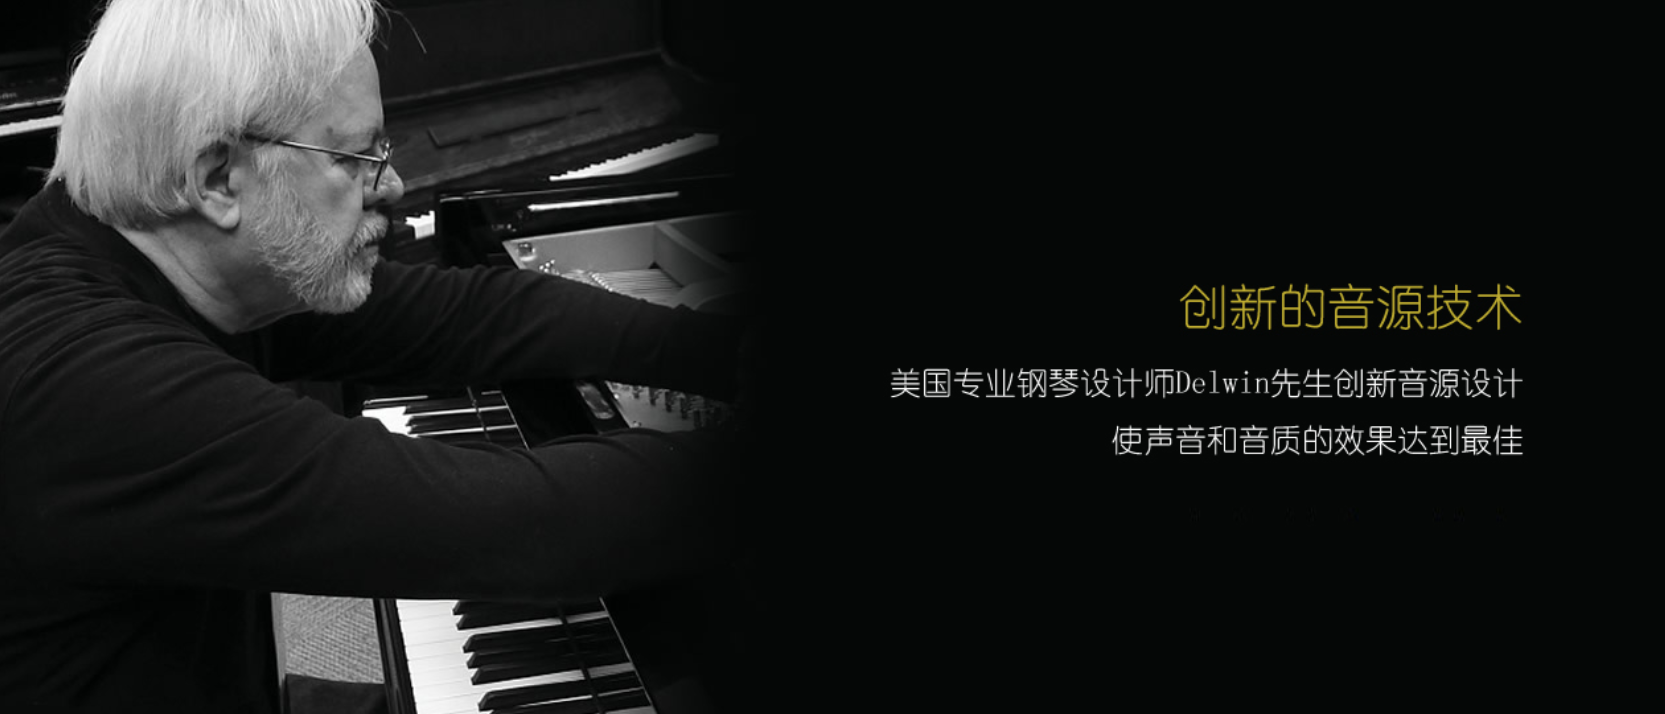 天津钢琴专卖店